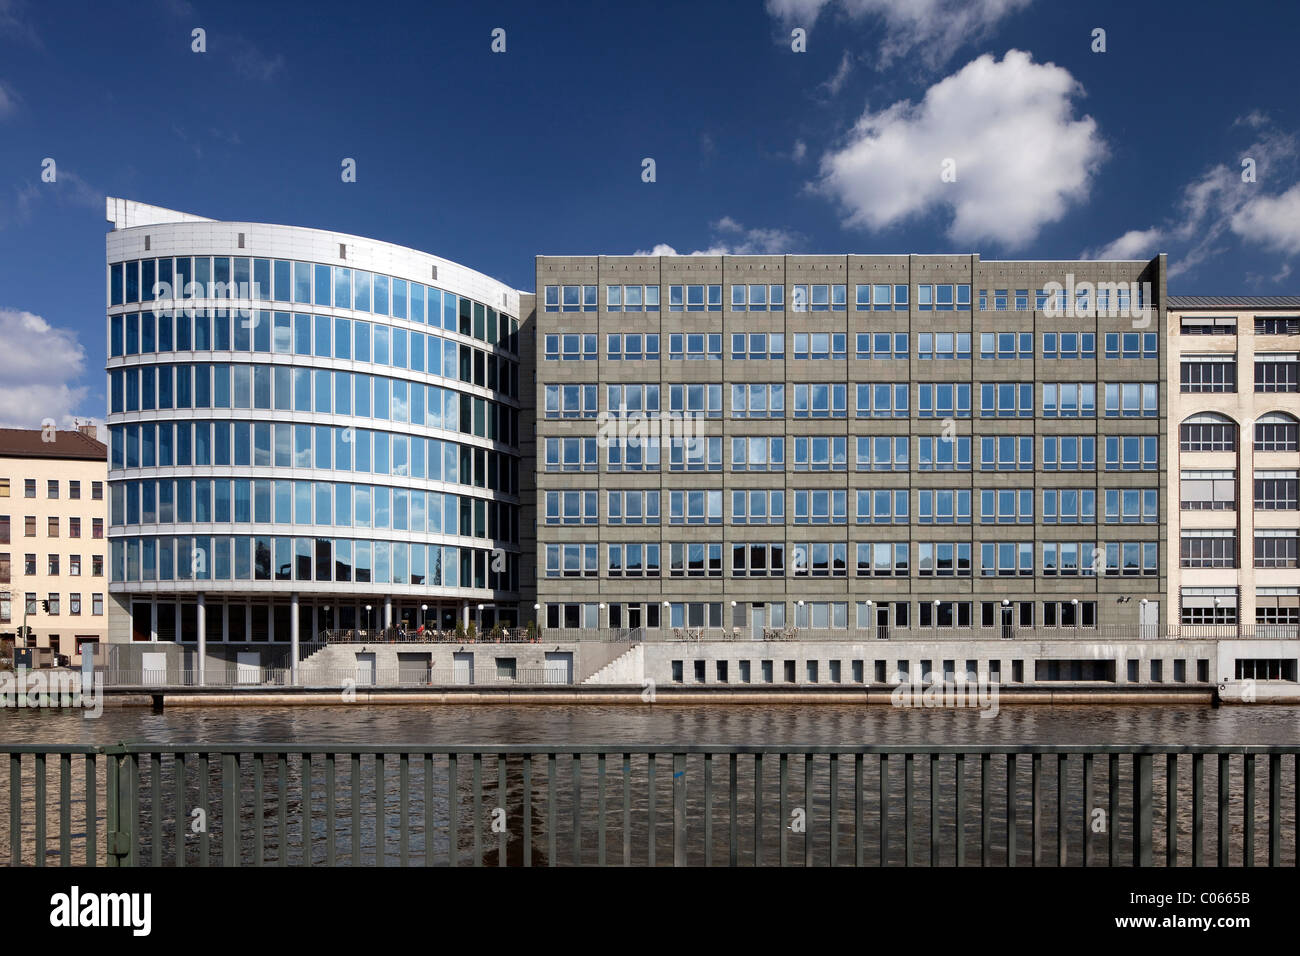 Immeuble de bureaux sur les bords de la rivière Spree, Charlottenburg, Berlin, Germany, Europe Banque D'Images